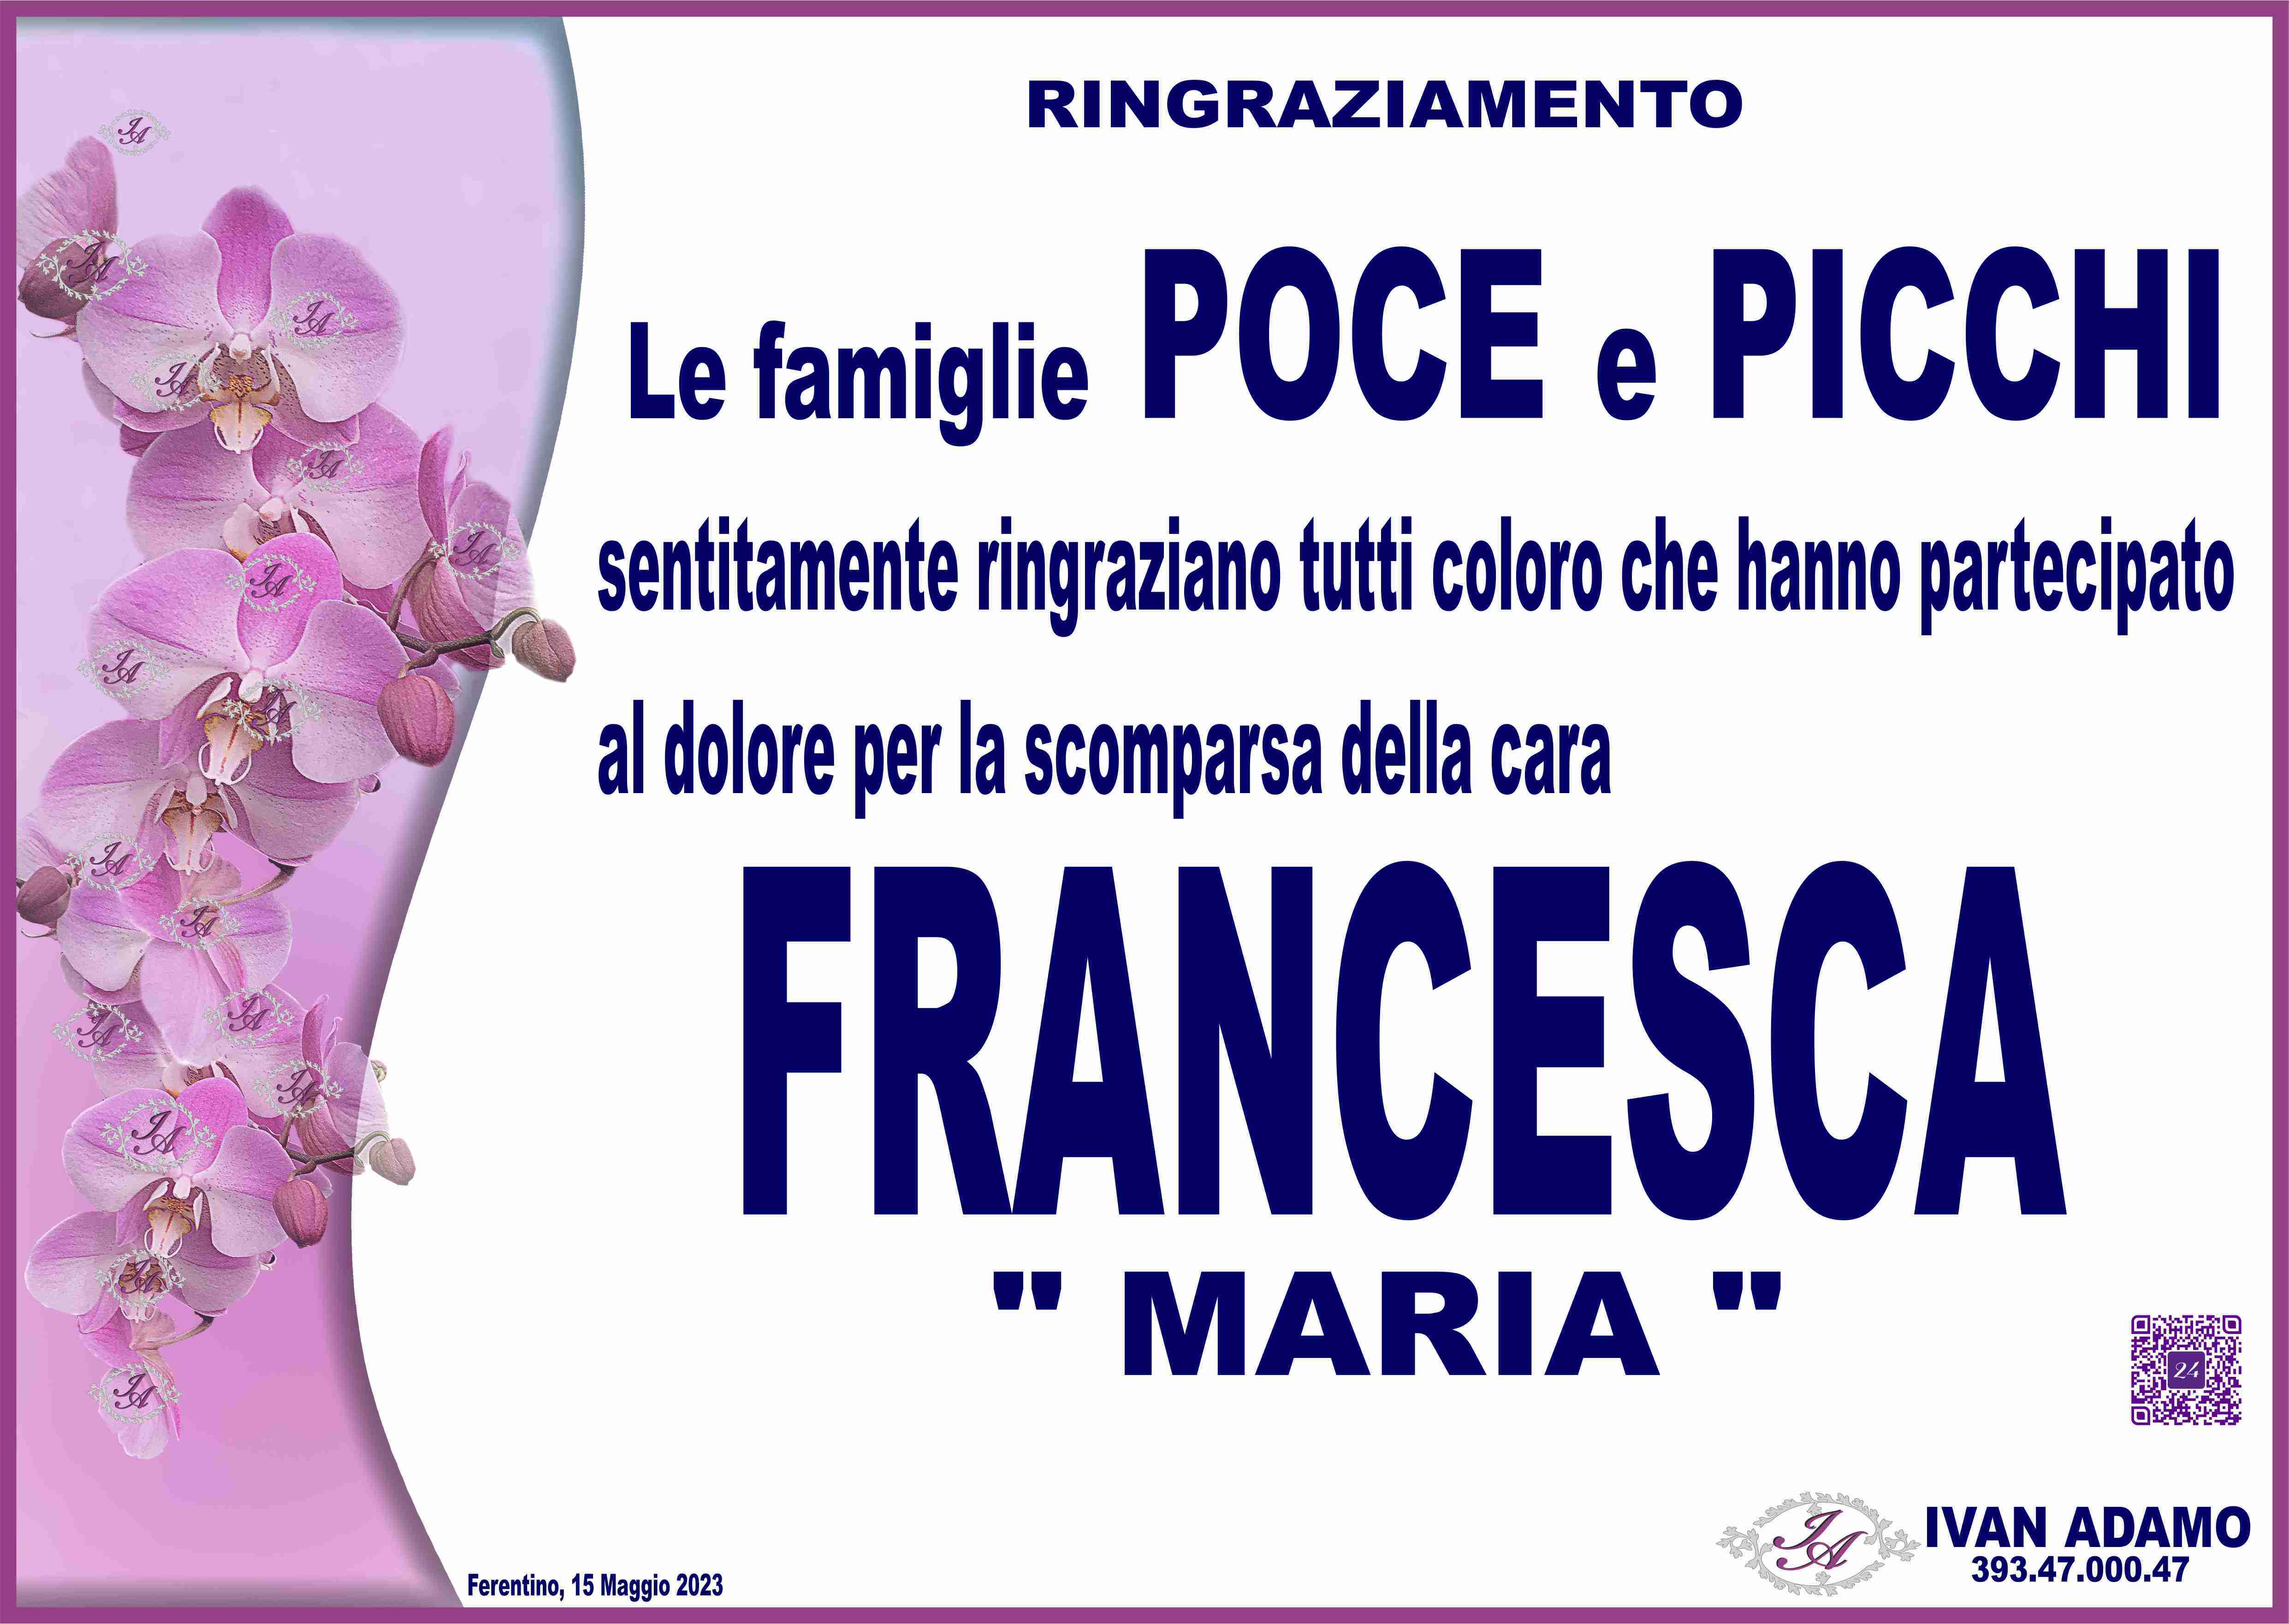 Francesca Picchi (Maria)